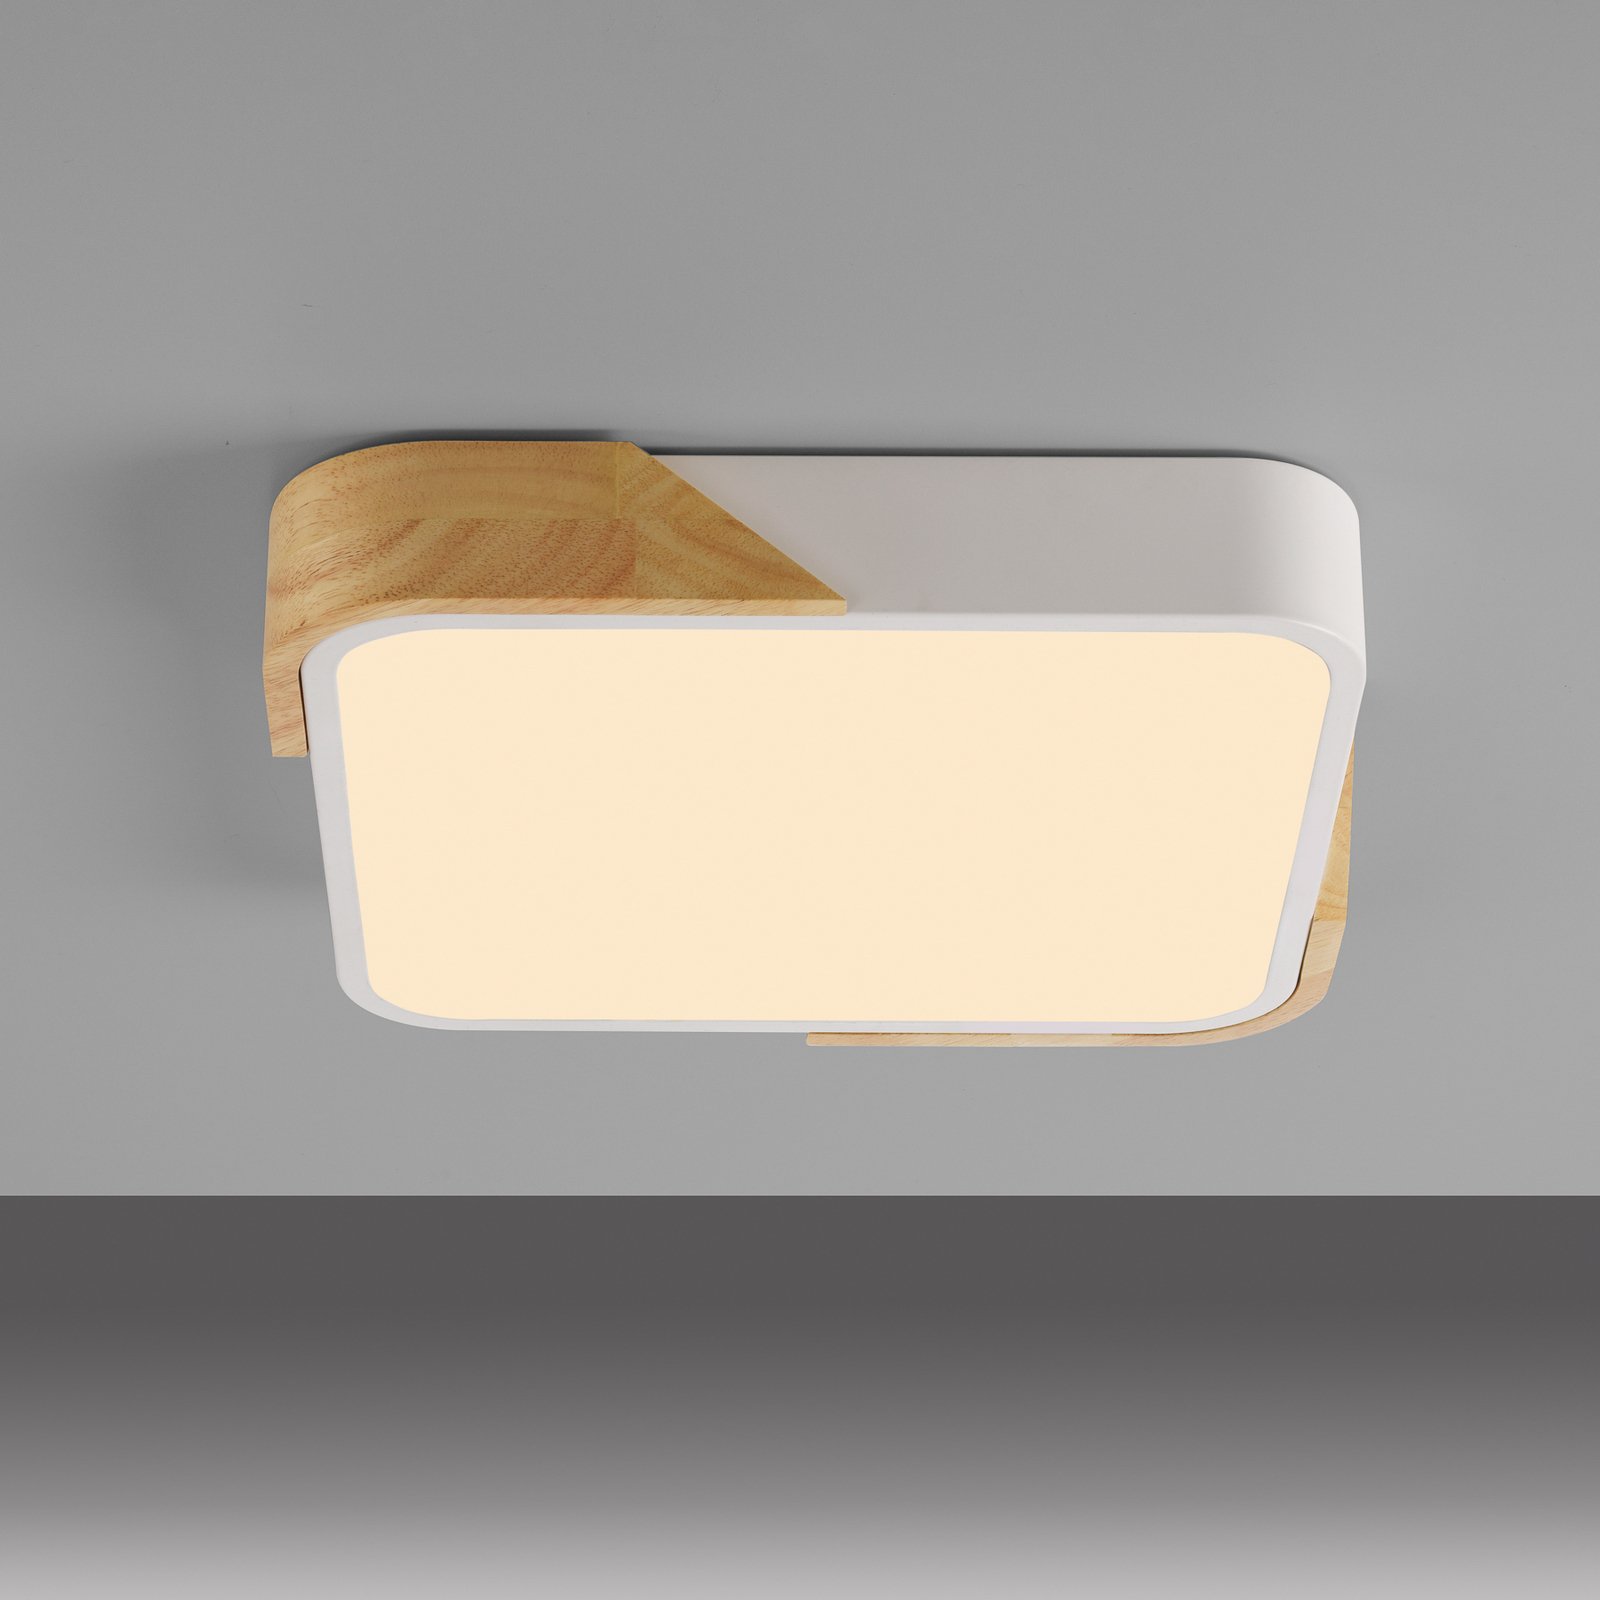 JUST LIGHT. LED ceiling light Bila, white, 32x32 cm, wood